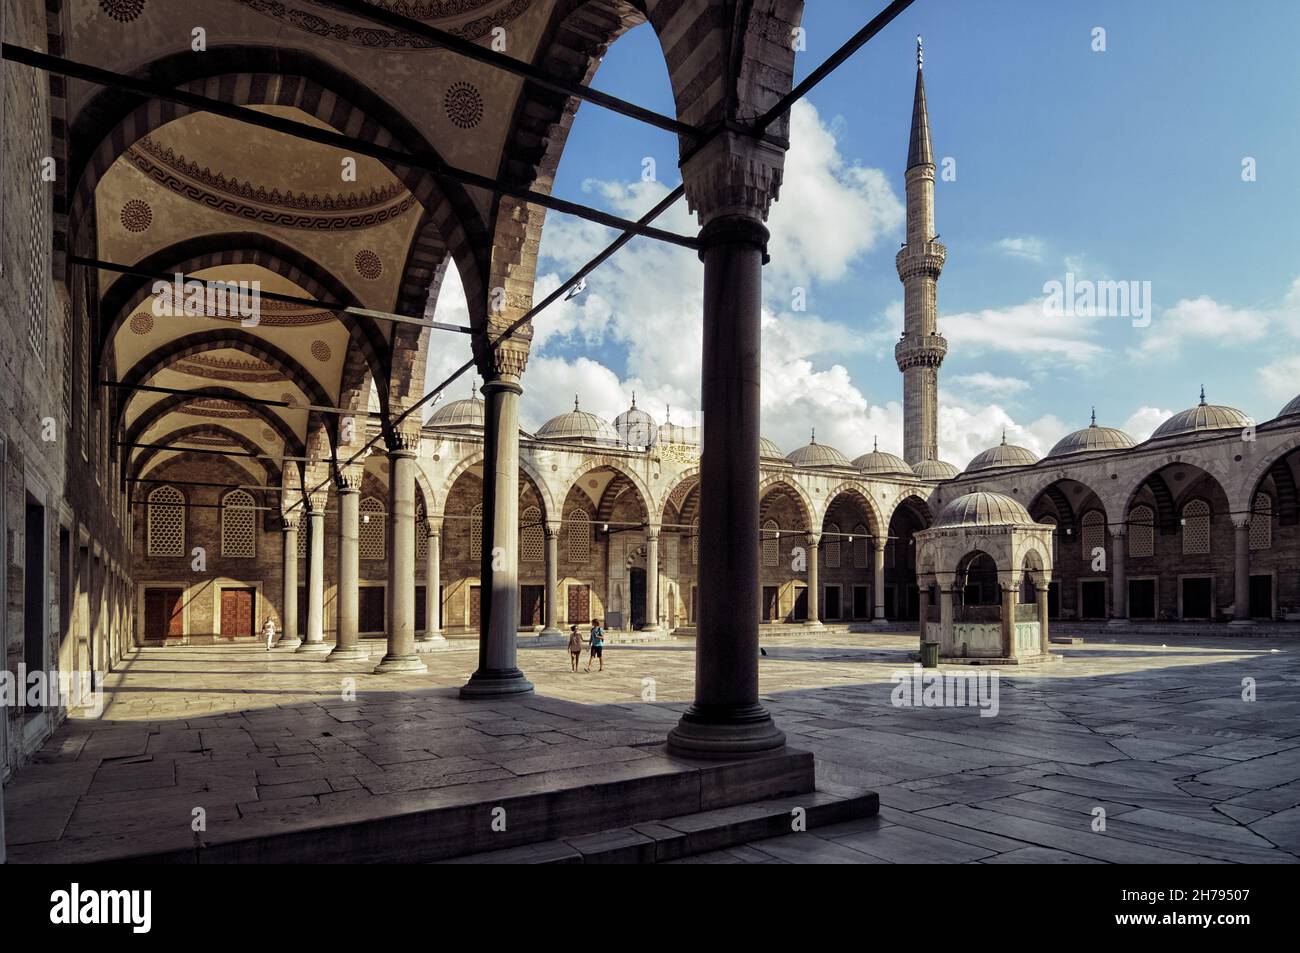 Le porche de la Mosquée bleue et le puits d'eau dans la cour, un point de repère du tourisme à Istanbul et la destination de voyage en turquie européenne Banque D'Images